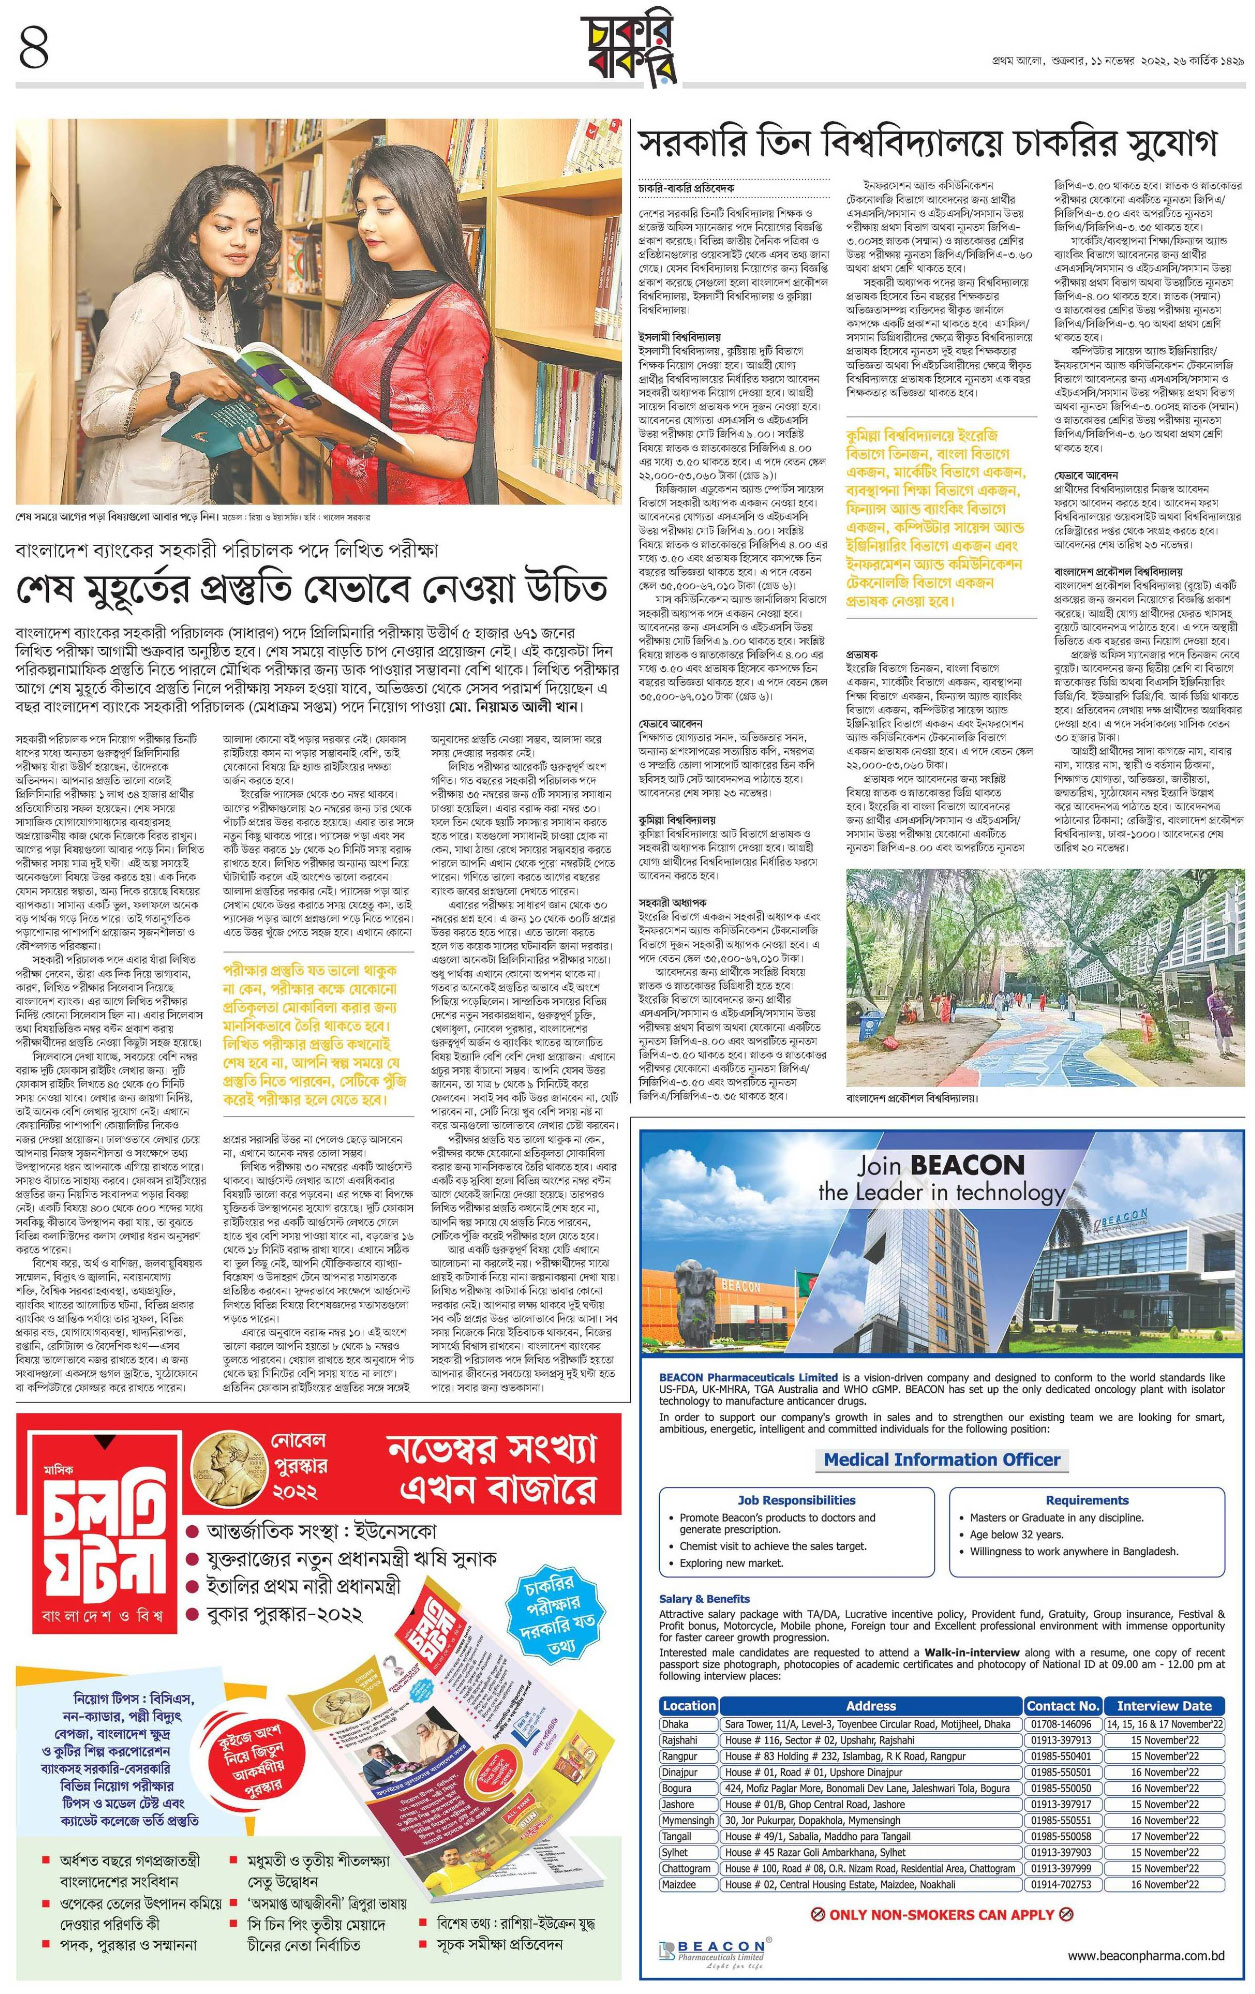 প্রথম আলো চাকরির খবর সাপ্তাহিক চাকরি বাকরি পত্রিকা ১৮ নভেম্বর ২০২২ - 18 November 2022 Prothom Alo Chakrir Khobor - প্রথম আলো চাকরির খবর পত্রিকা ১৮-১১-২০২২ - প্রথম আলো পত্রিকা আজকের খবর - Prothom Alo Job circular 2022-2023 - প্রথম আলো চাকরির খবর 2022-2023 - prothom alo chakri bakri 2022-2023 - চাকরি বাকরি ২০২২-২০২৩ - সাপ্তাহিক চাকরি বাকরি ২০২২-২০২৩